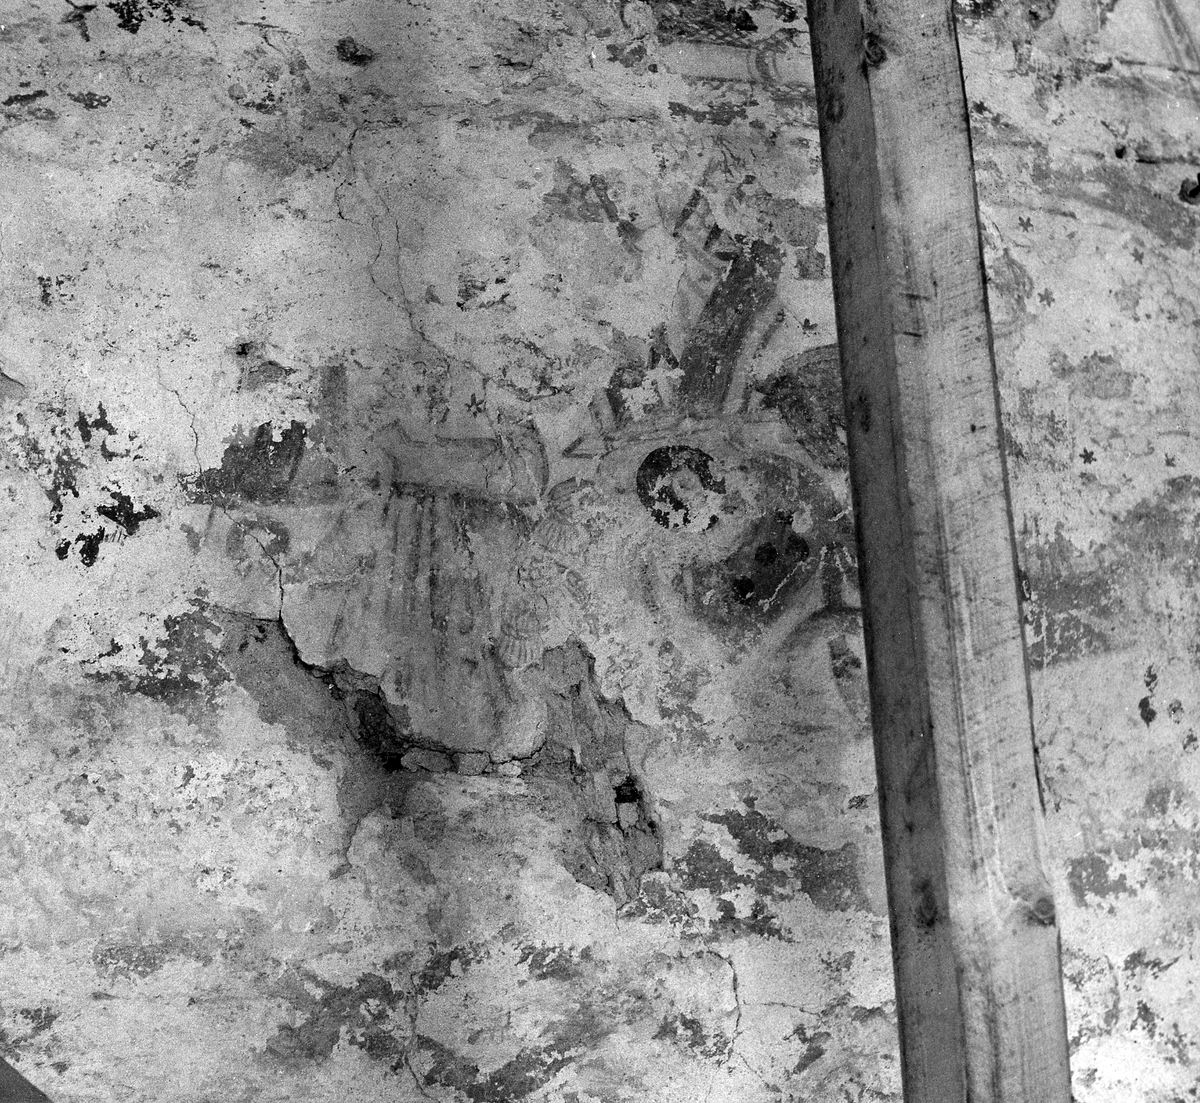 Stråvalla sn.
Stråvalla kyrka efter renoveringen juni 1964.
Foto 1, Norra långhusväggen, detalj bakom predikstolen, efter restaureringen. 
Foto 2, Södra långhusväggen, detalj av målning omedelbart öster om läktarbröstningen och nedanför taklisten.
Foto 3 Del av kalkmålning på flätbandsfris, norra långhusväggen.
Foto 4 Norra långhusväggen, del av kalkmålning i arkad på flätbandsfris.
Foto 5 Norra långhusväggen, nedre delen av kalkmålning i arkad flätbandsfris.
Foto 6, Norra långhusväggen, del av kalkmålning med mittbård och underliggande arkadbåge.